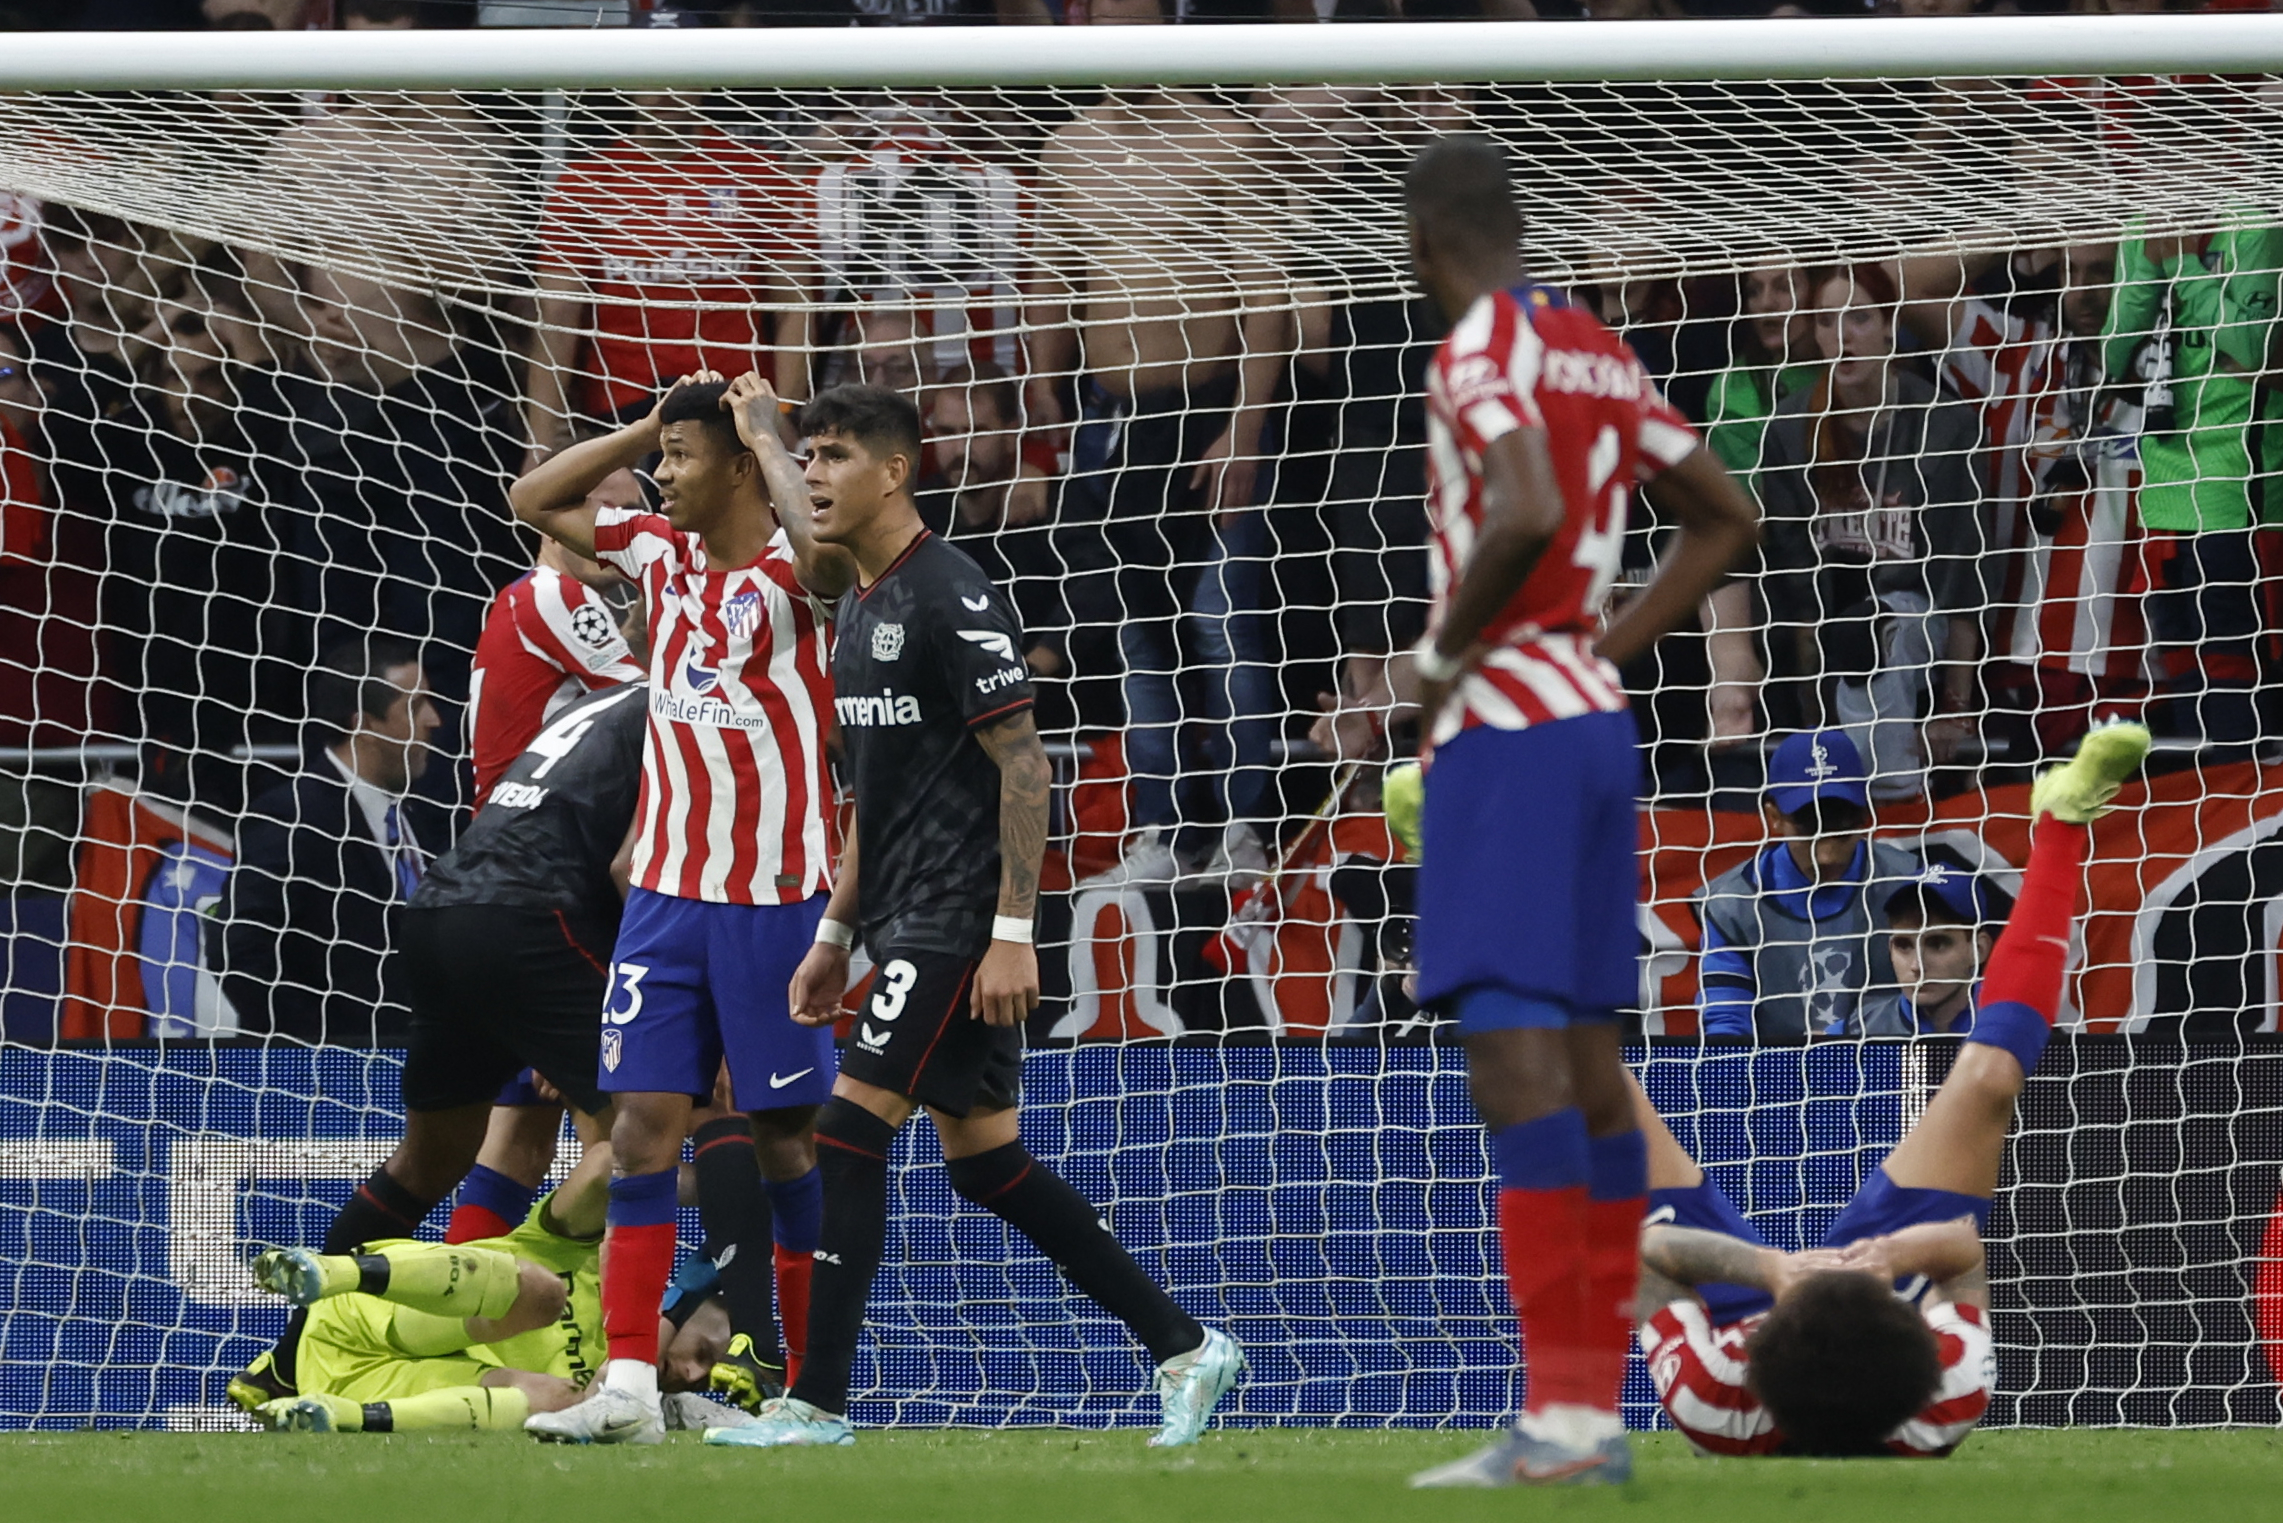 Los jugadores del Atlético de Madrid se lamentan del penalti fallado en la última jugada del encuentro. (Foto Prensa Libre: EFE)